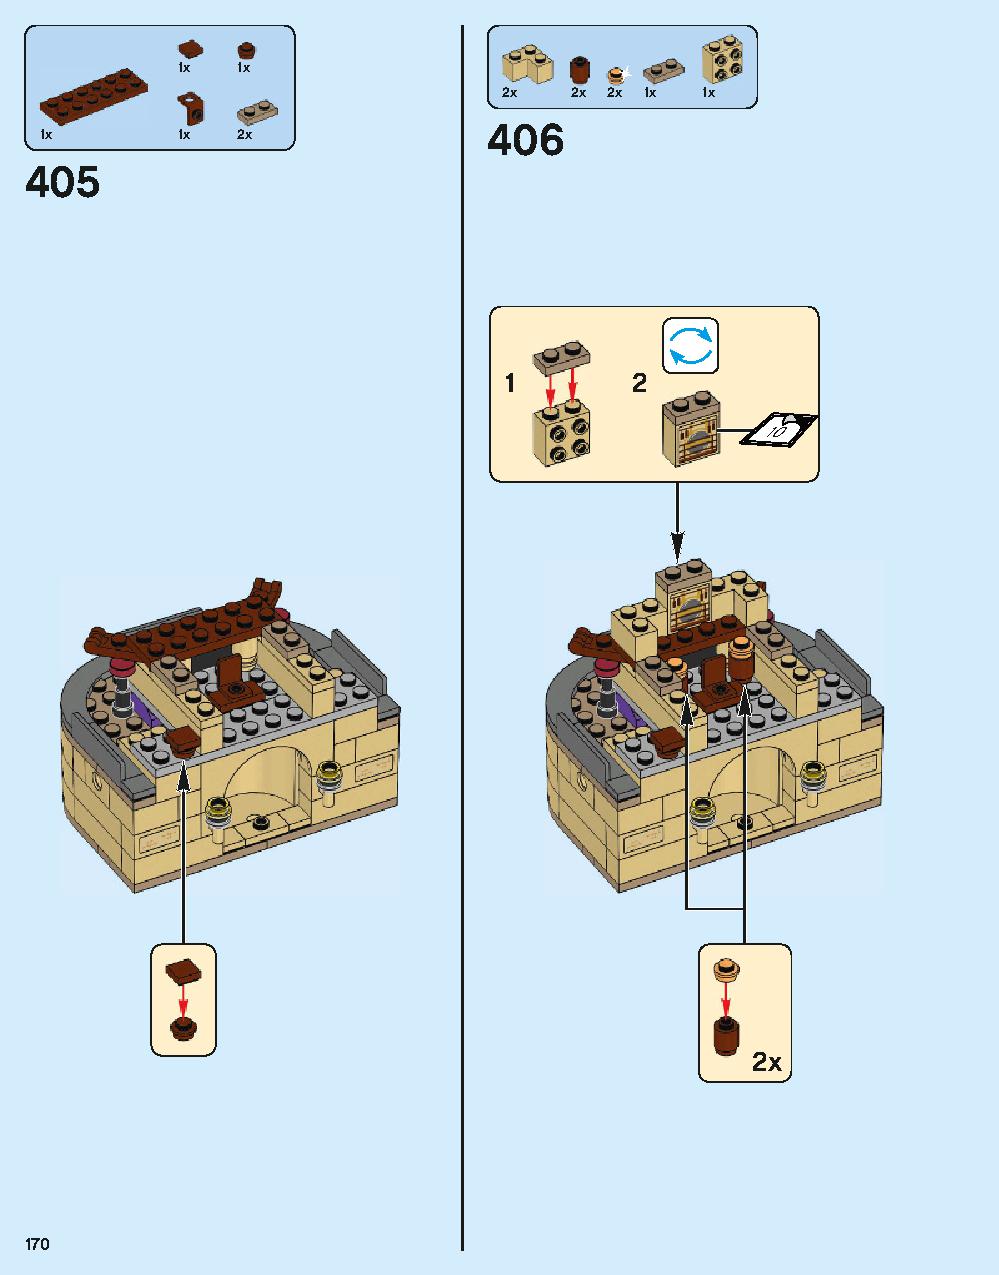 ホグワーツ城 71043 レゴの商品情報 レゴの説明書・組立方法 170 page